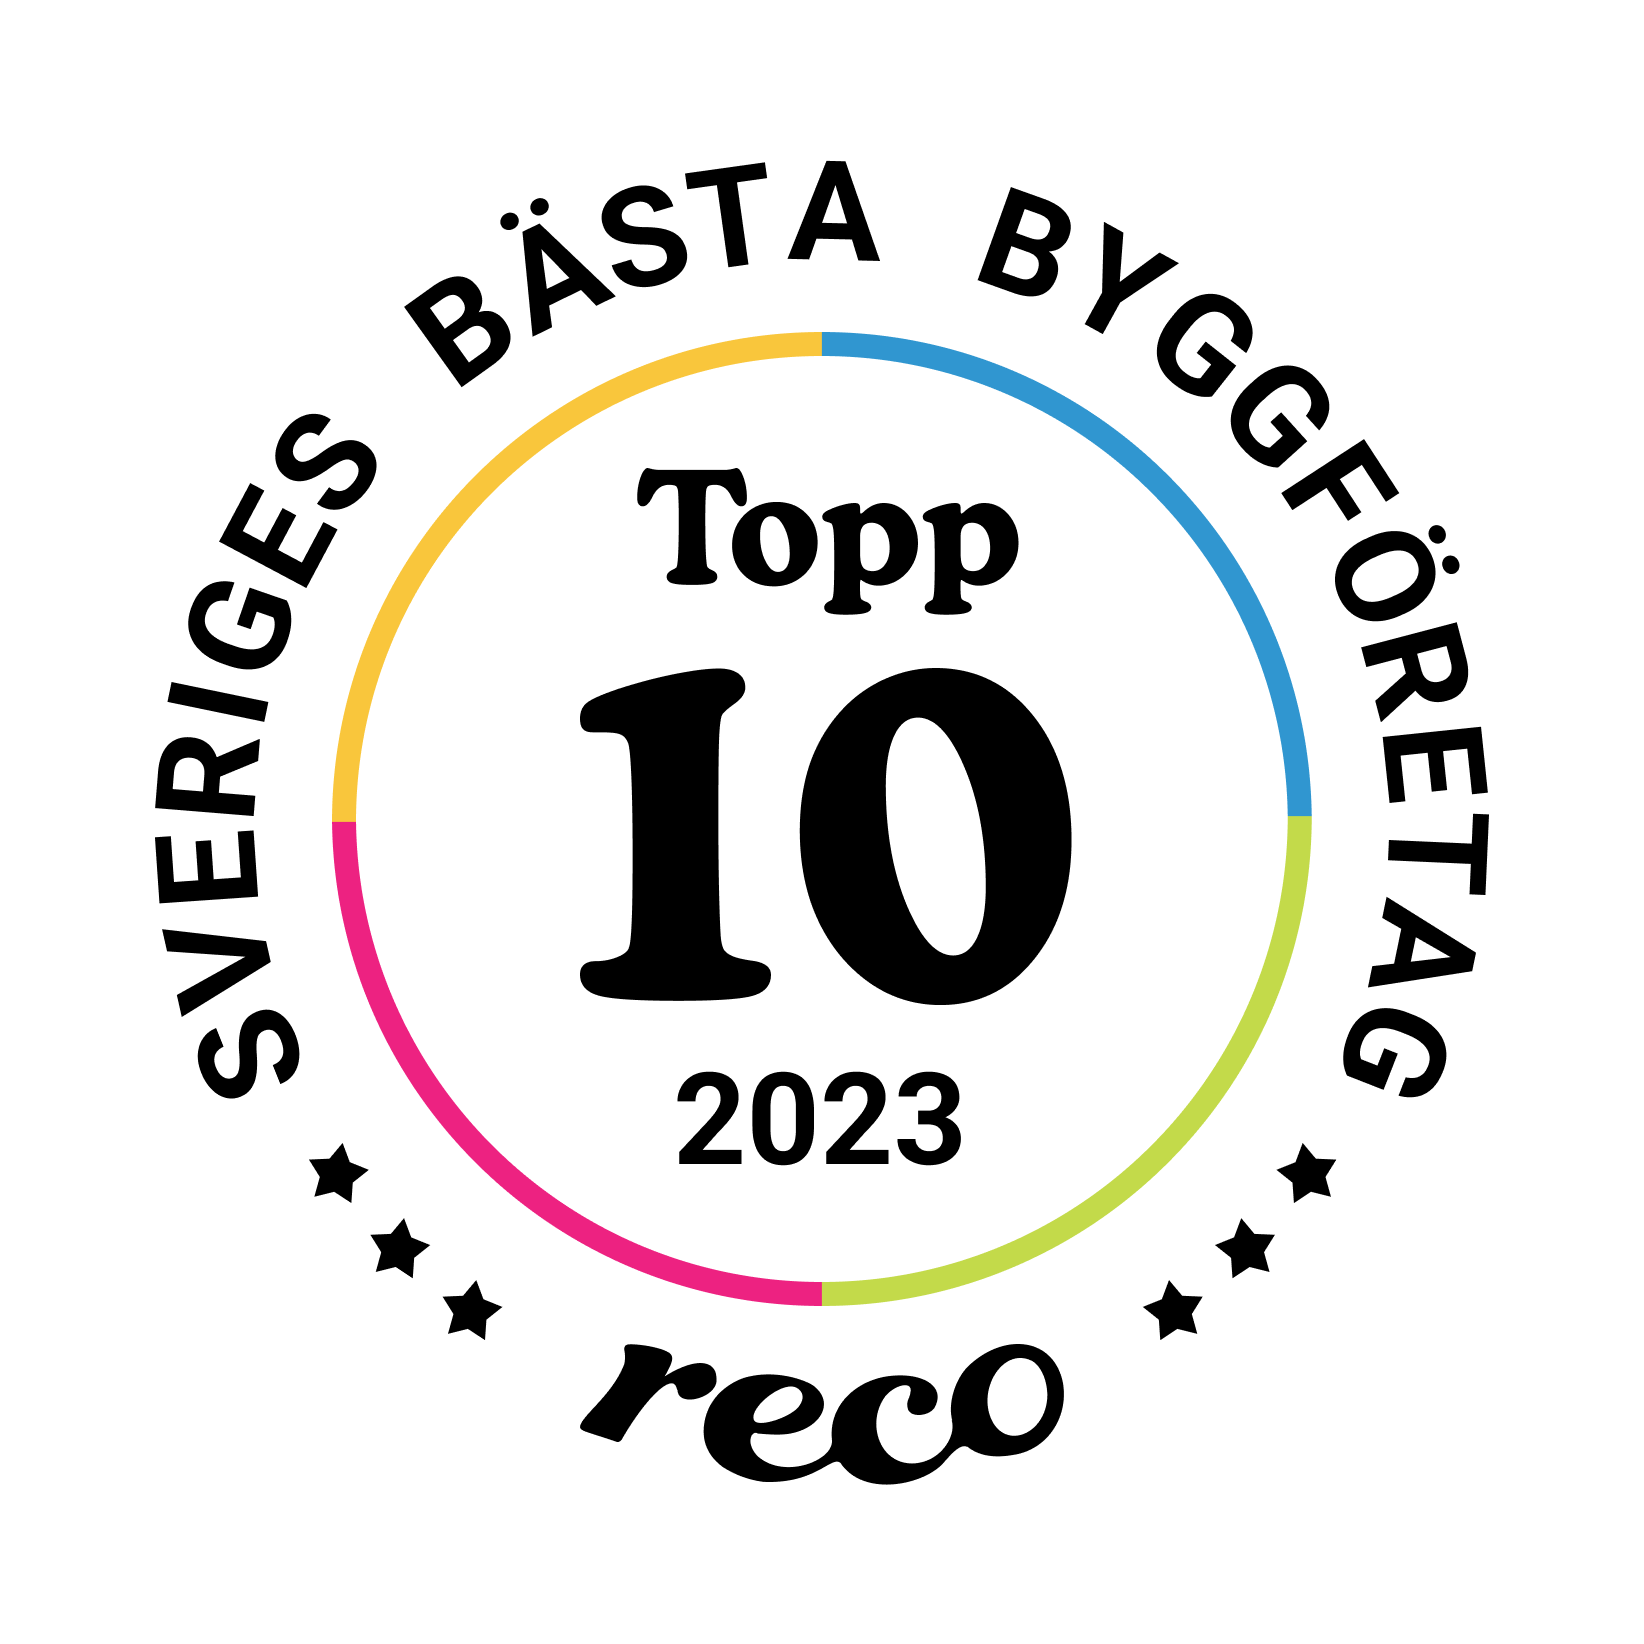 Bagde - Best in Sweden - Byggfirma - Top Ten@2x